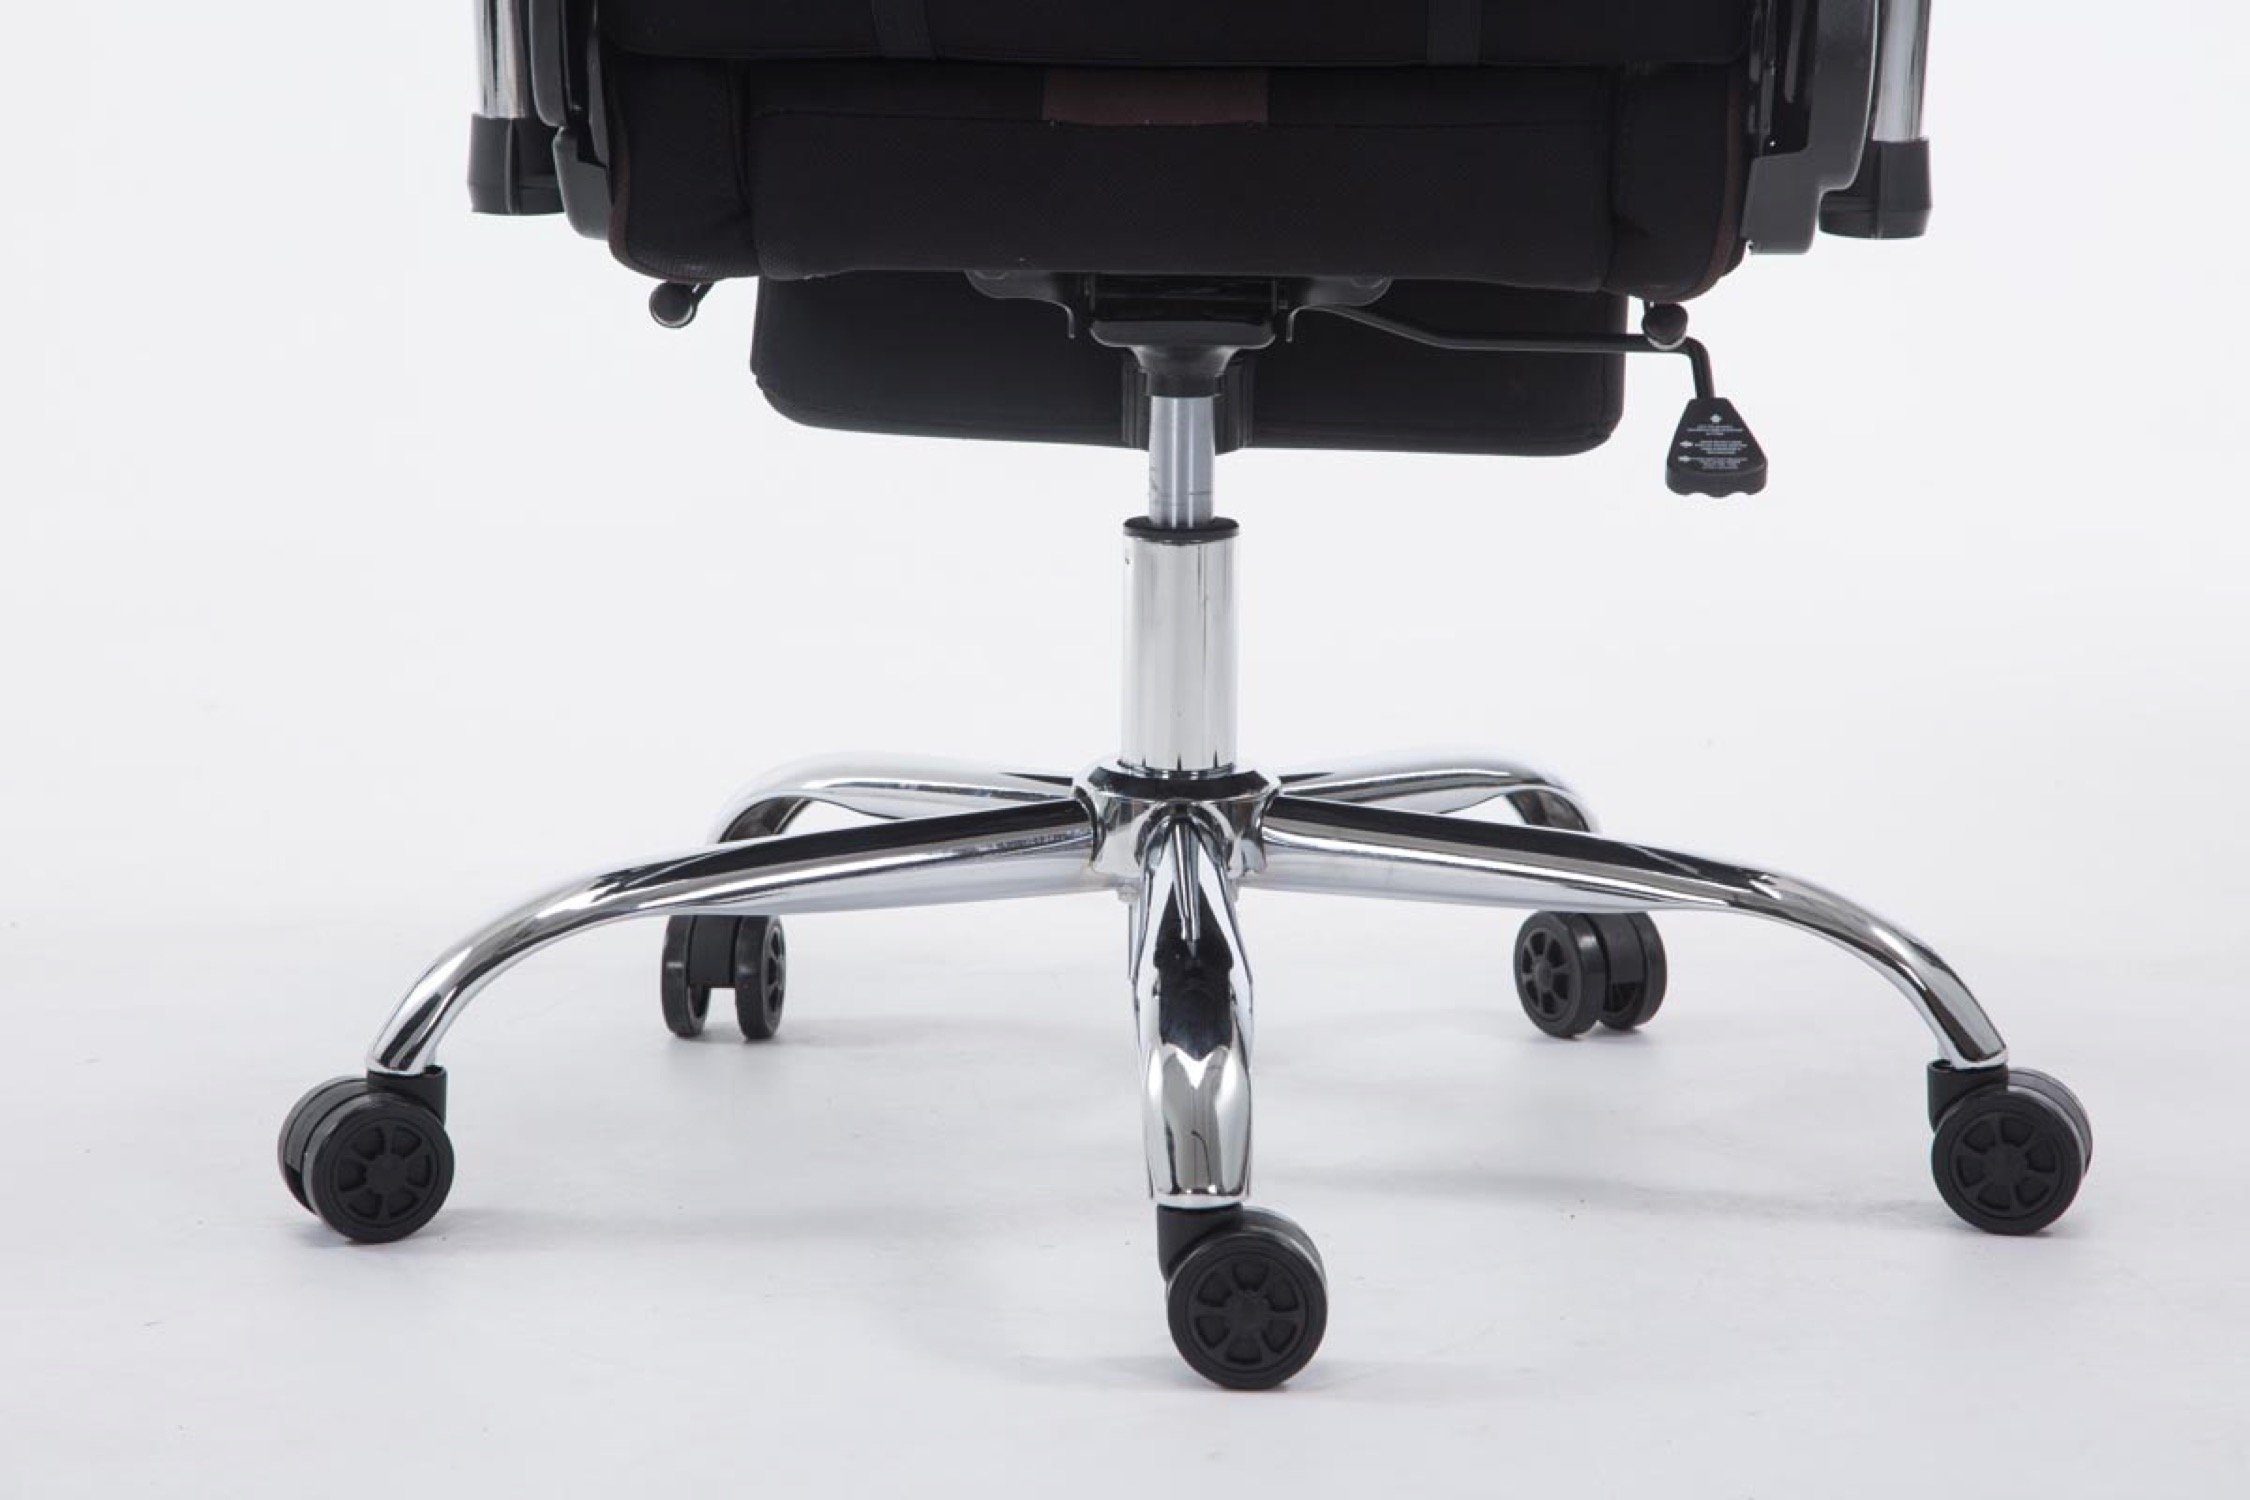 TPFLiving Gaming-Stuhl Limitless 360° und mit bequemer Gestell: - drehbar Gamingstuhl, Racingstuhl, Rückenlehne Drehstuhl, höhenverstellbar Metall Sitzfläche: Stoff Chefsessel), schwarz/braun - chrom (Schreibtischstuhl